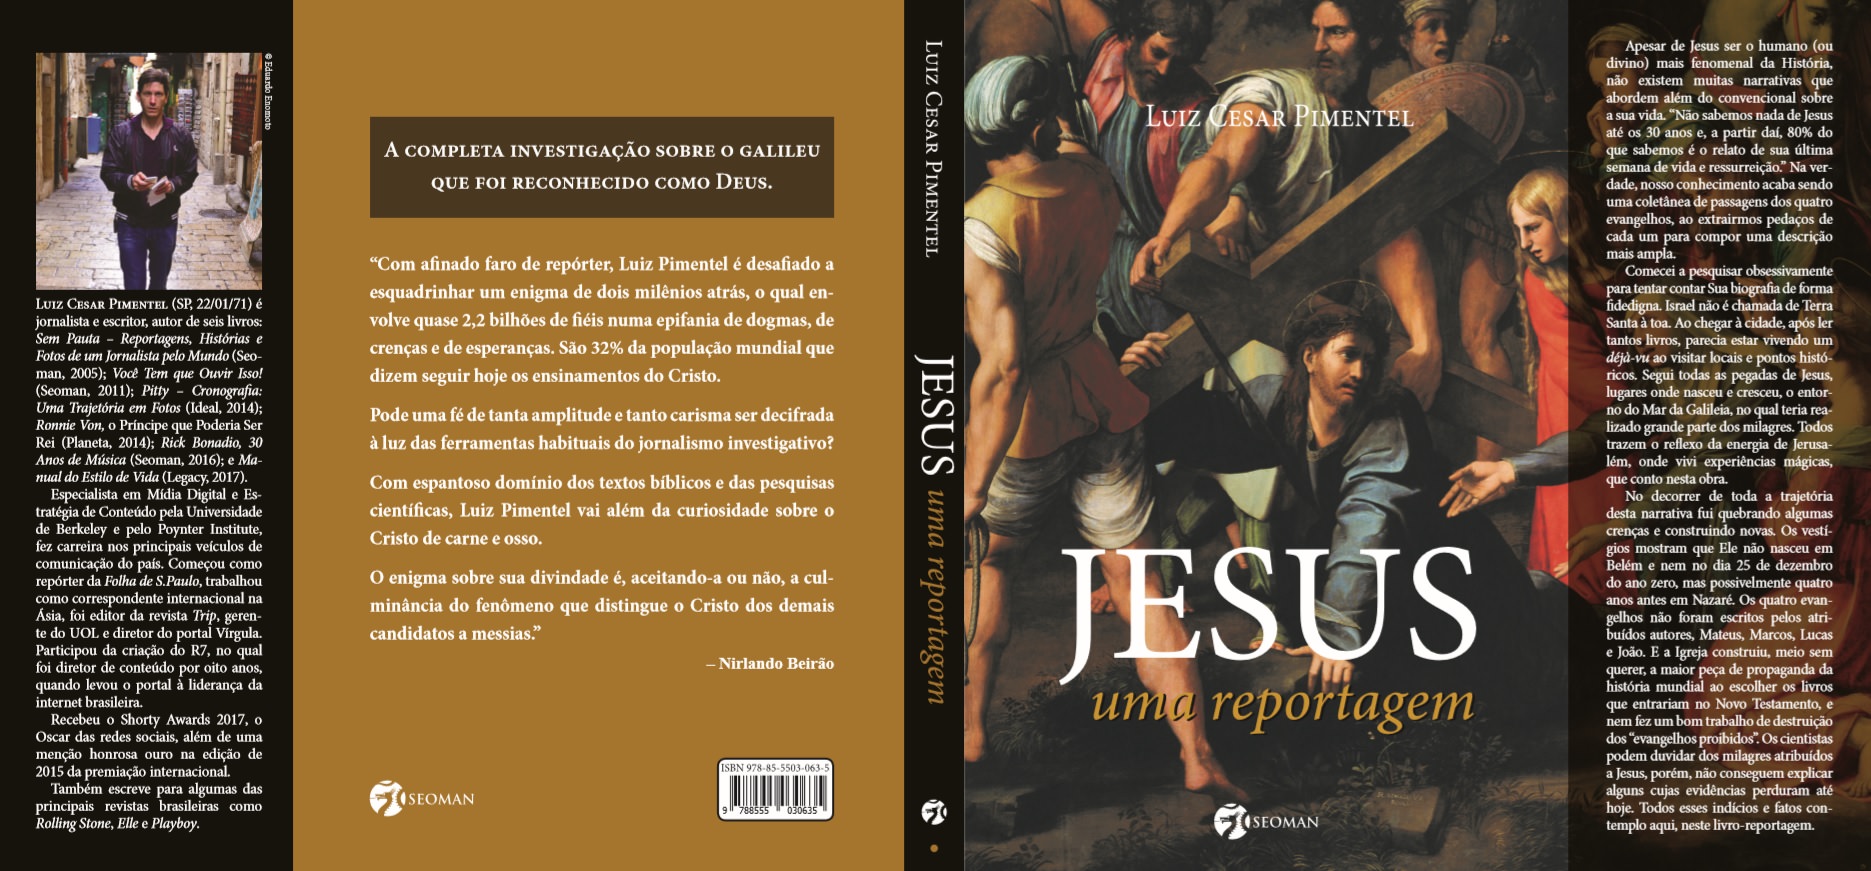 书“耶稣, 报告文学“路易斯·塞萨尔·皮门特尔, 封面. 照片: MF 全球新闻.